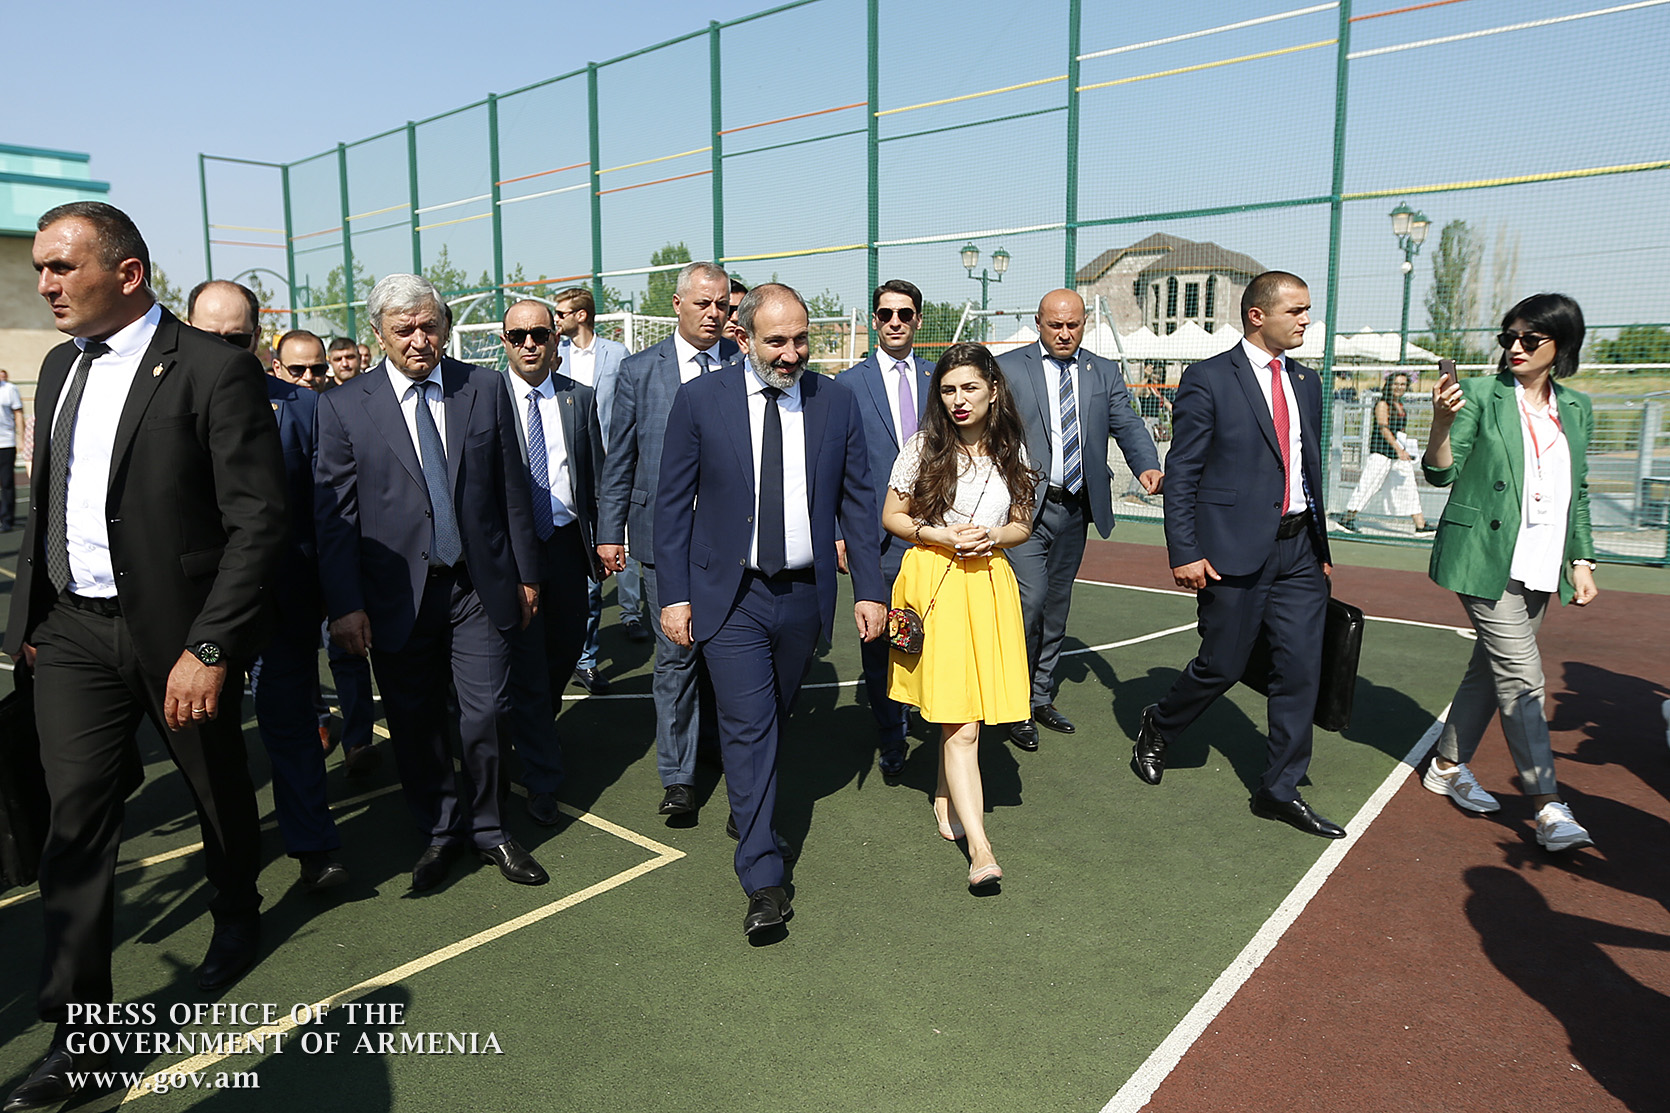 Никол Пашинян поздравил жителей Масиса с открытием современного парка и спорткомплекса 